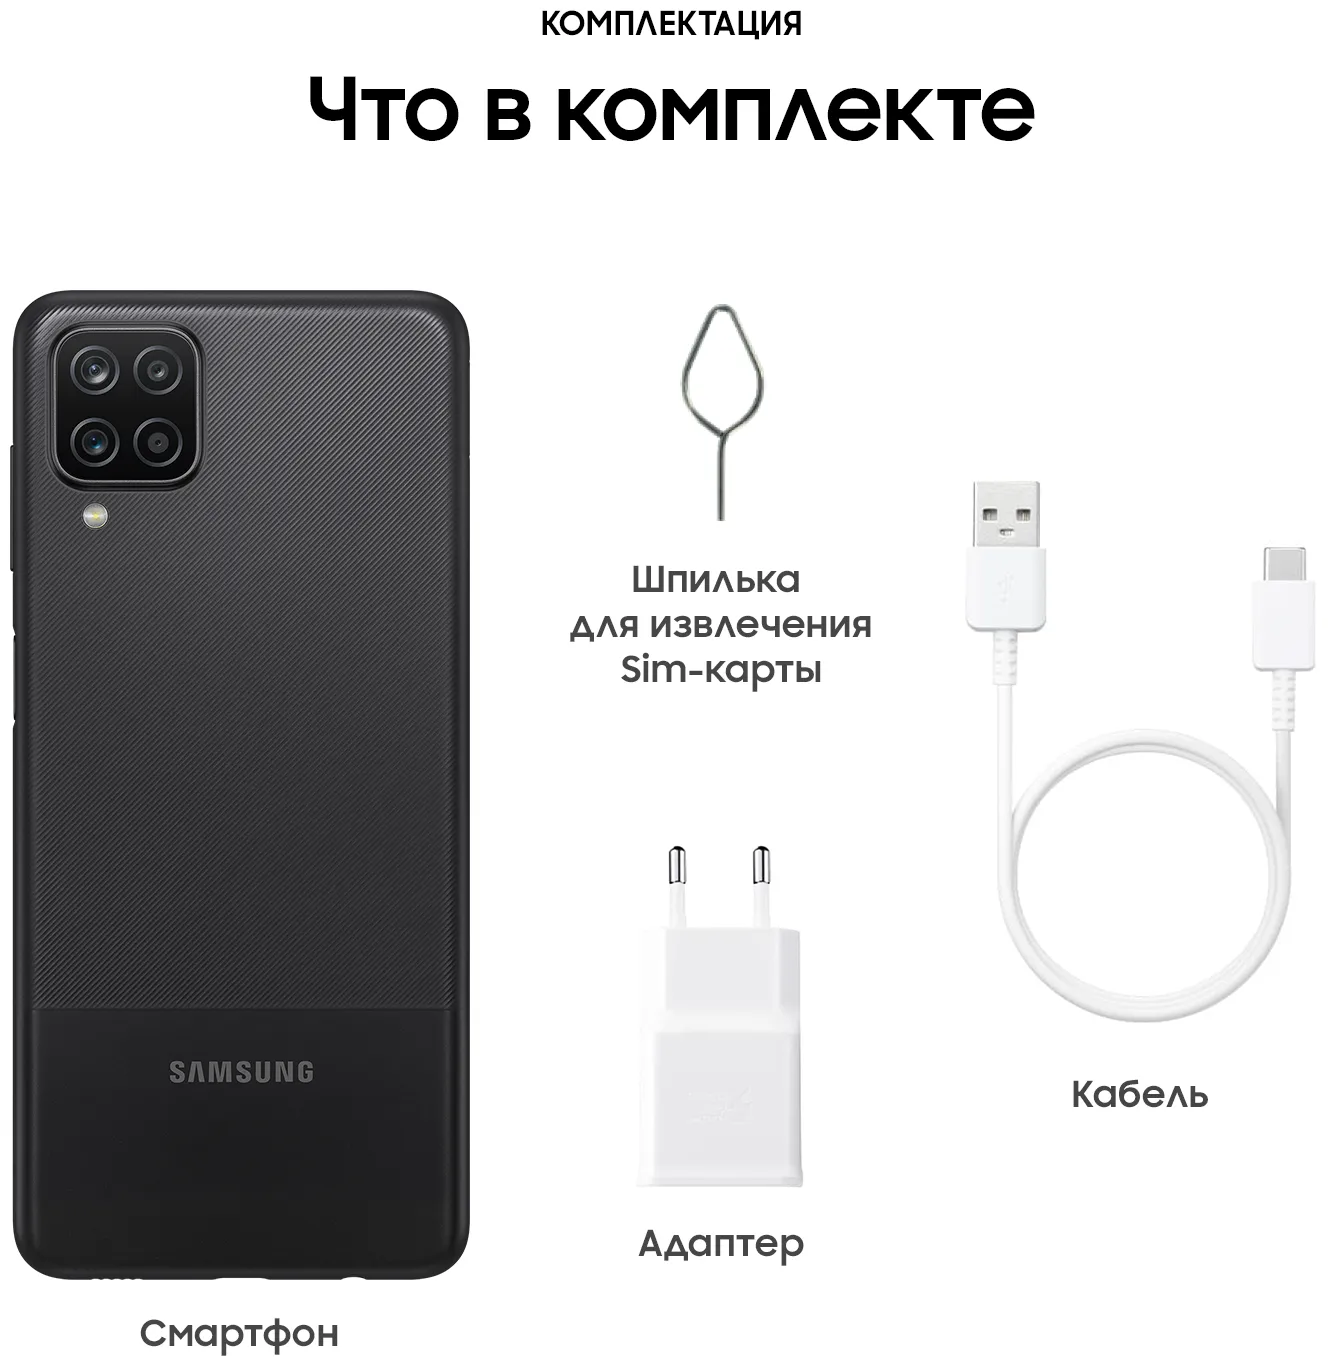 Samsung Galaxy A12 (SM-A127) 4/64 GB, qora#10